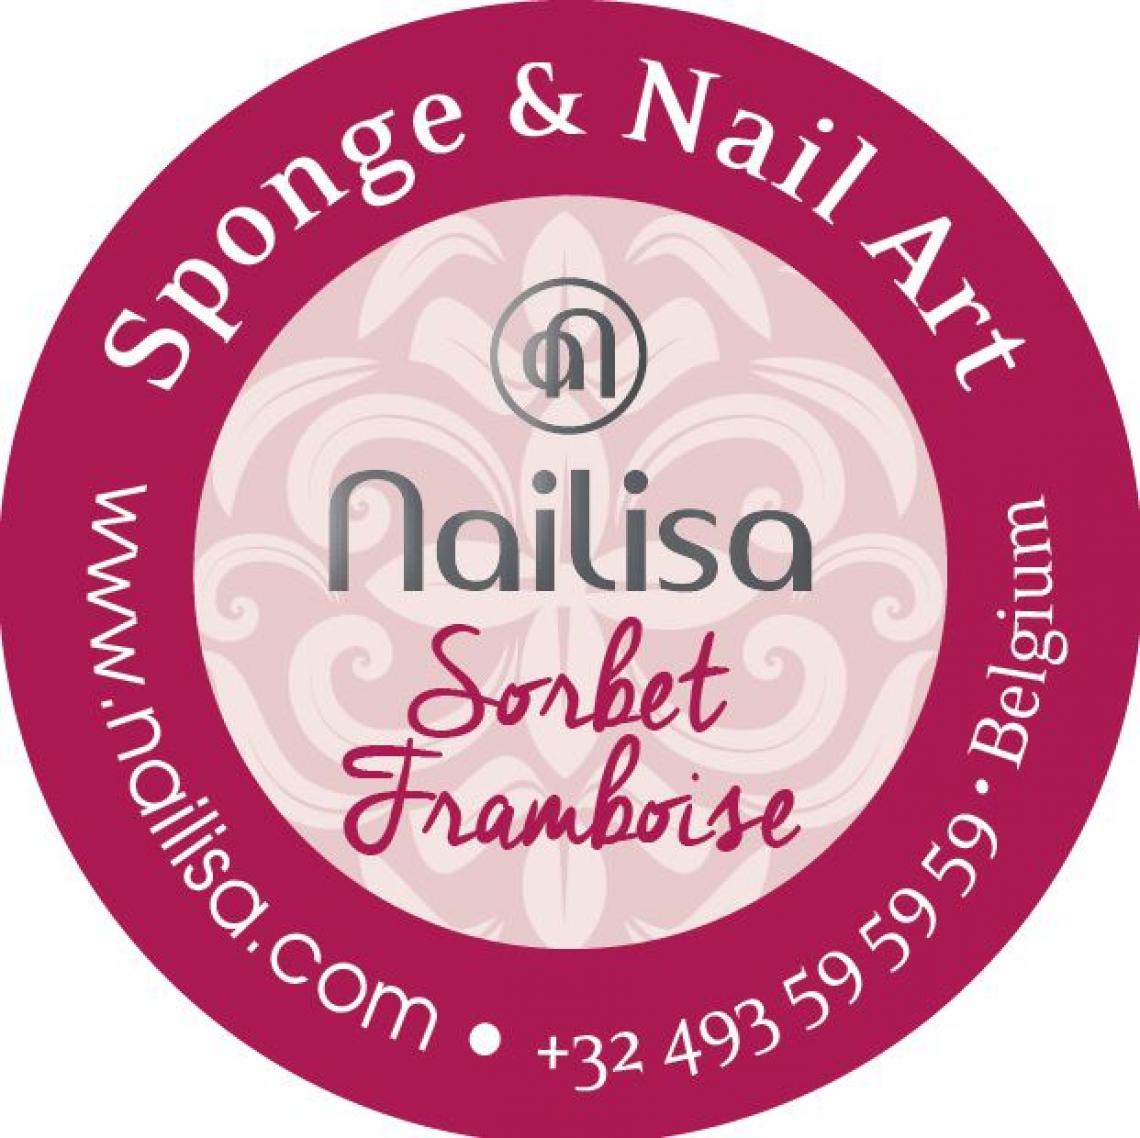 Painting Gel Sponge & Nail Art - Sorbet Framboise 5ml - photo 8